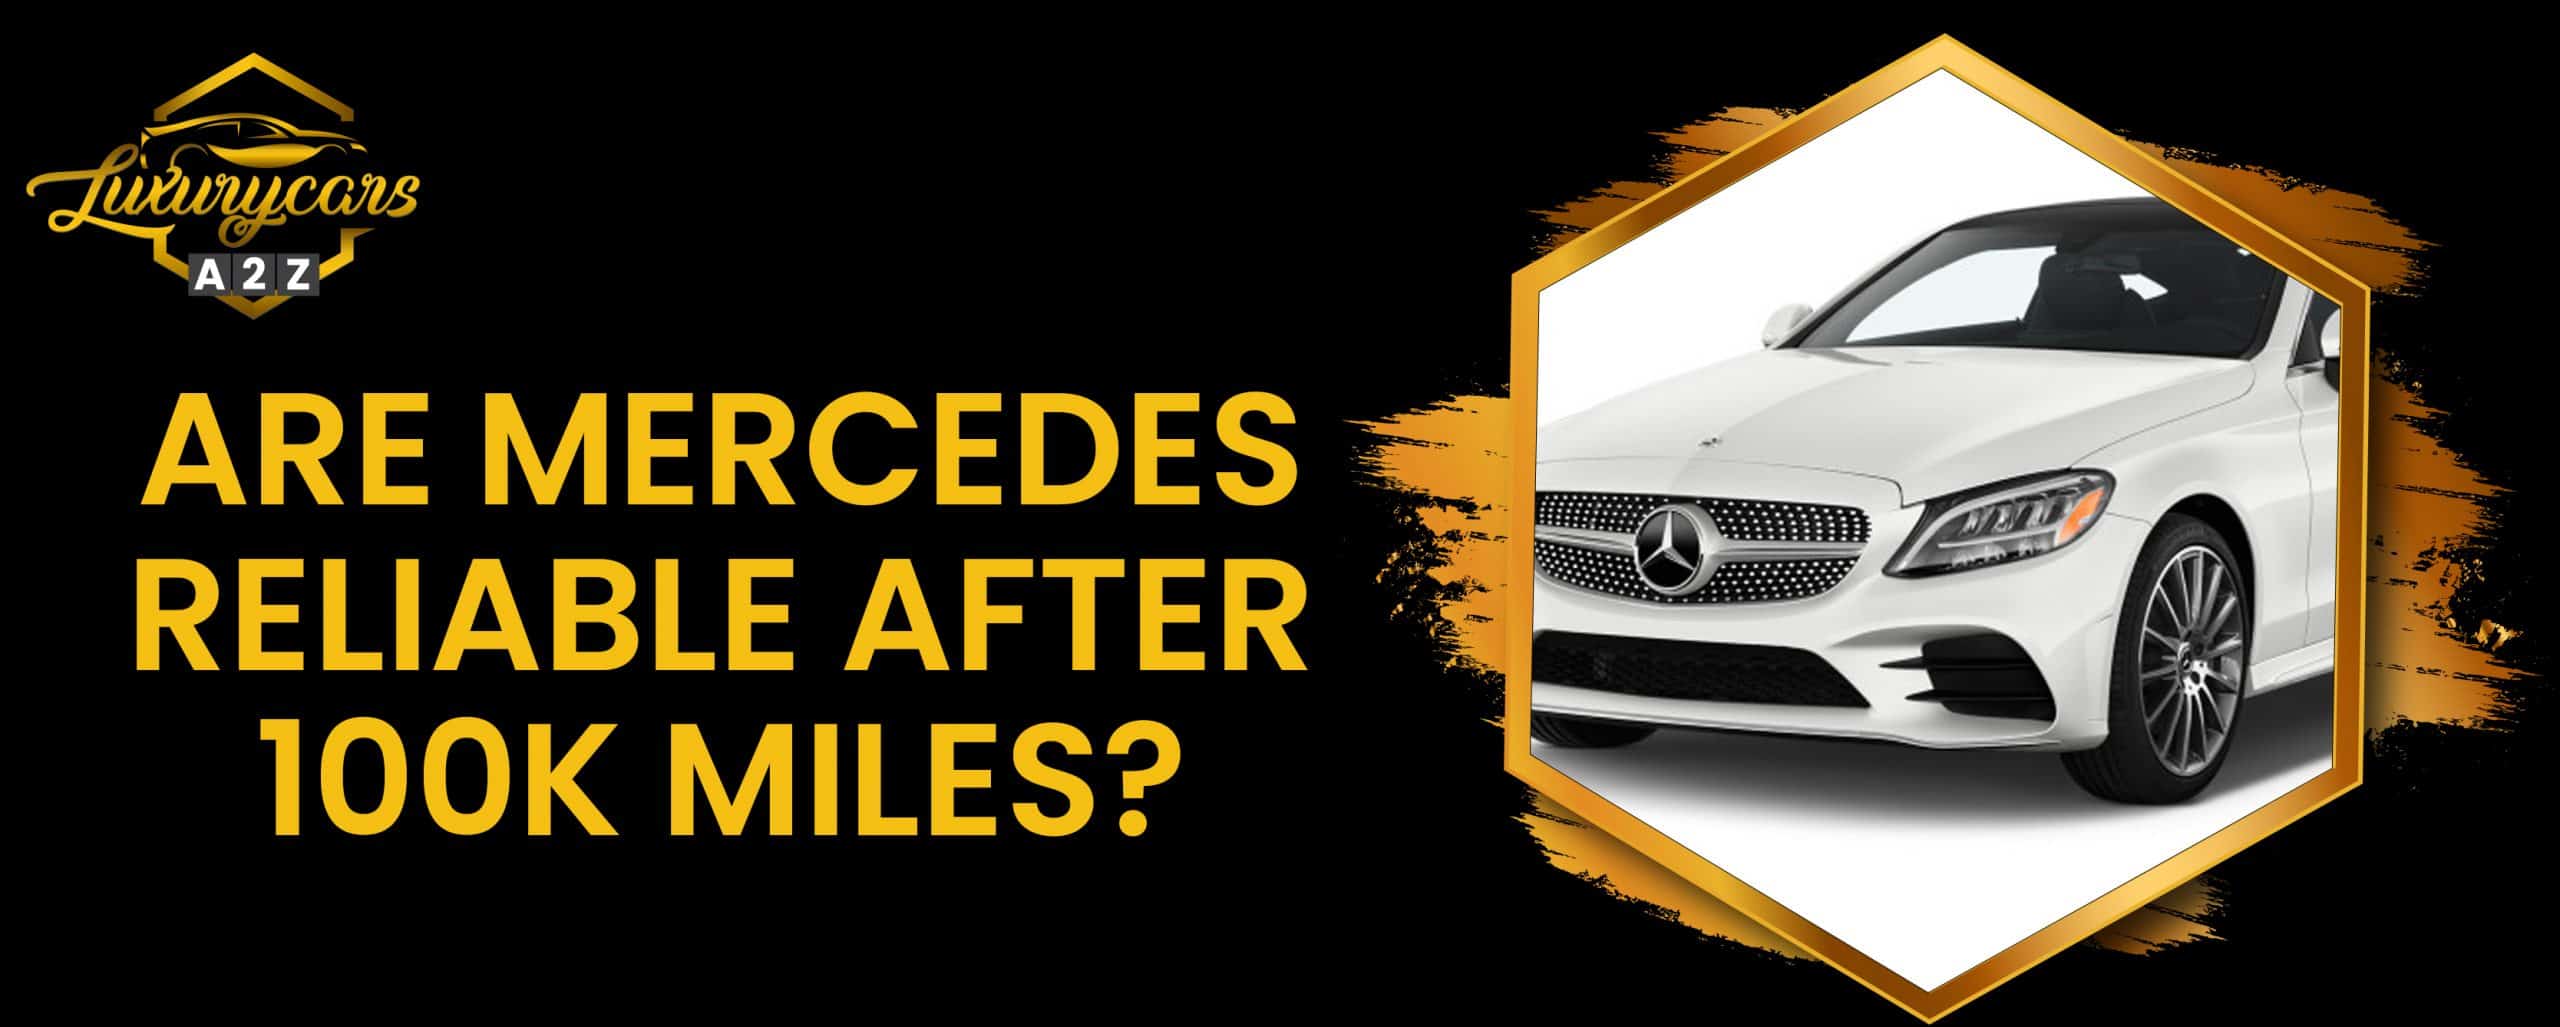 Les voitures Mercedes sont-elles fiables après 100.000 km ?